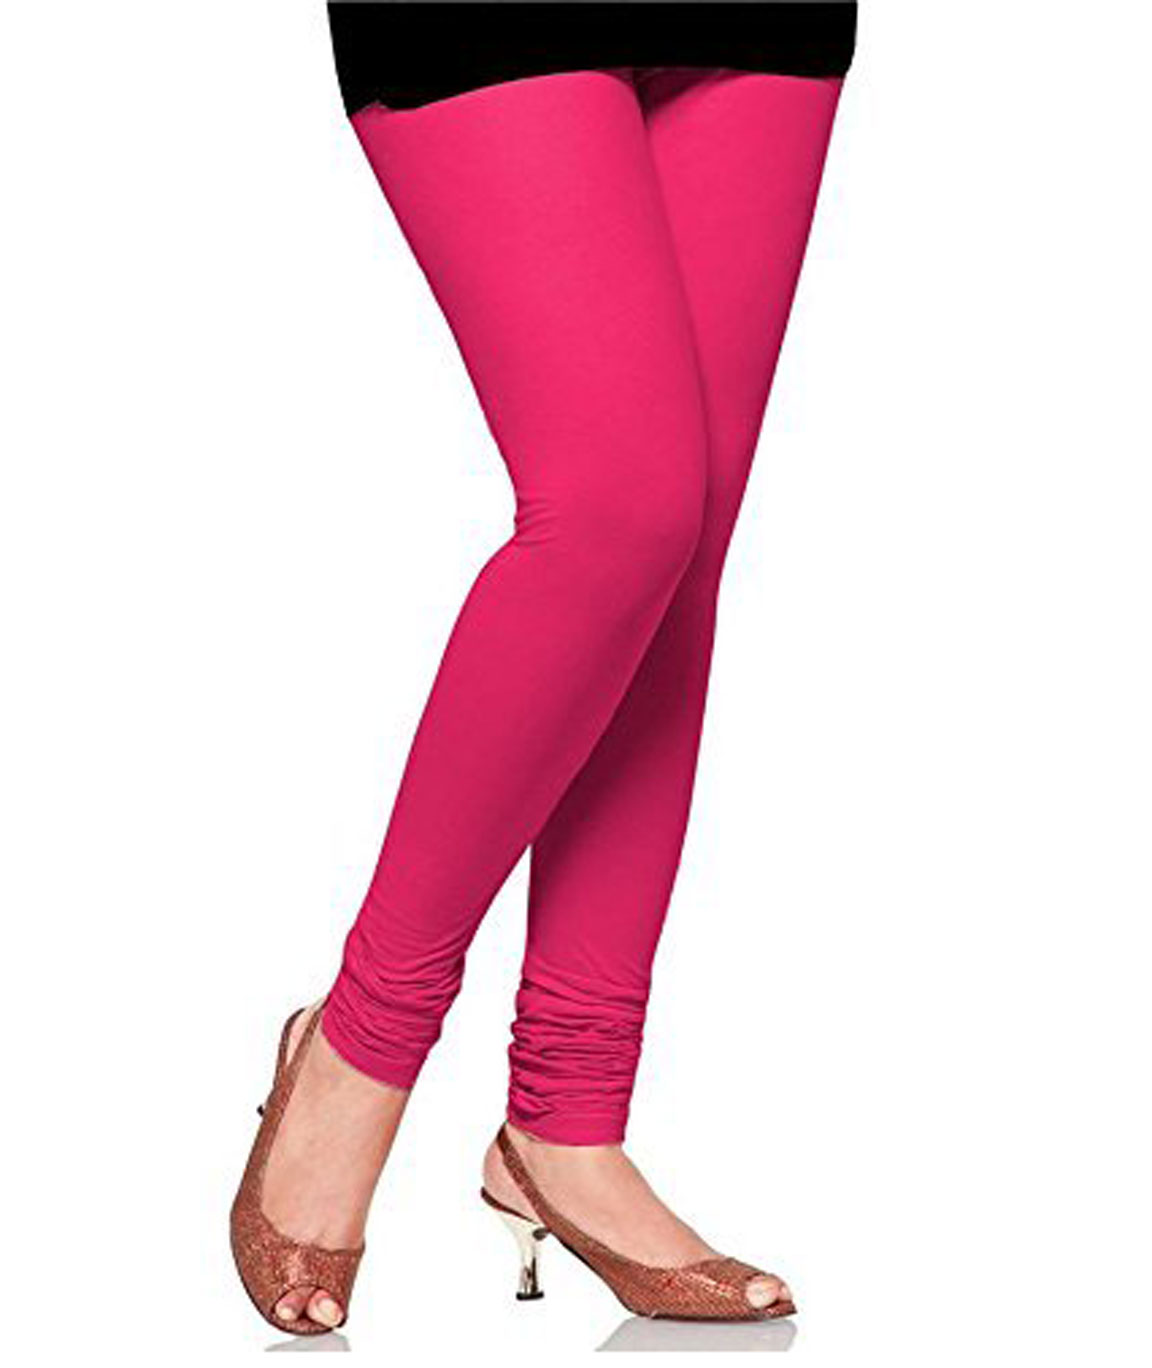 Amazon.com: Indian Women's Churidar Stretchable Shining Leggings India  Clothing Yoga Pant Pink : Clothing, Shoes & Jewelry